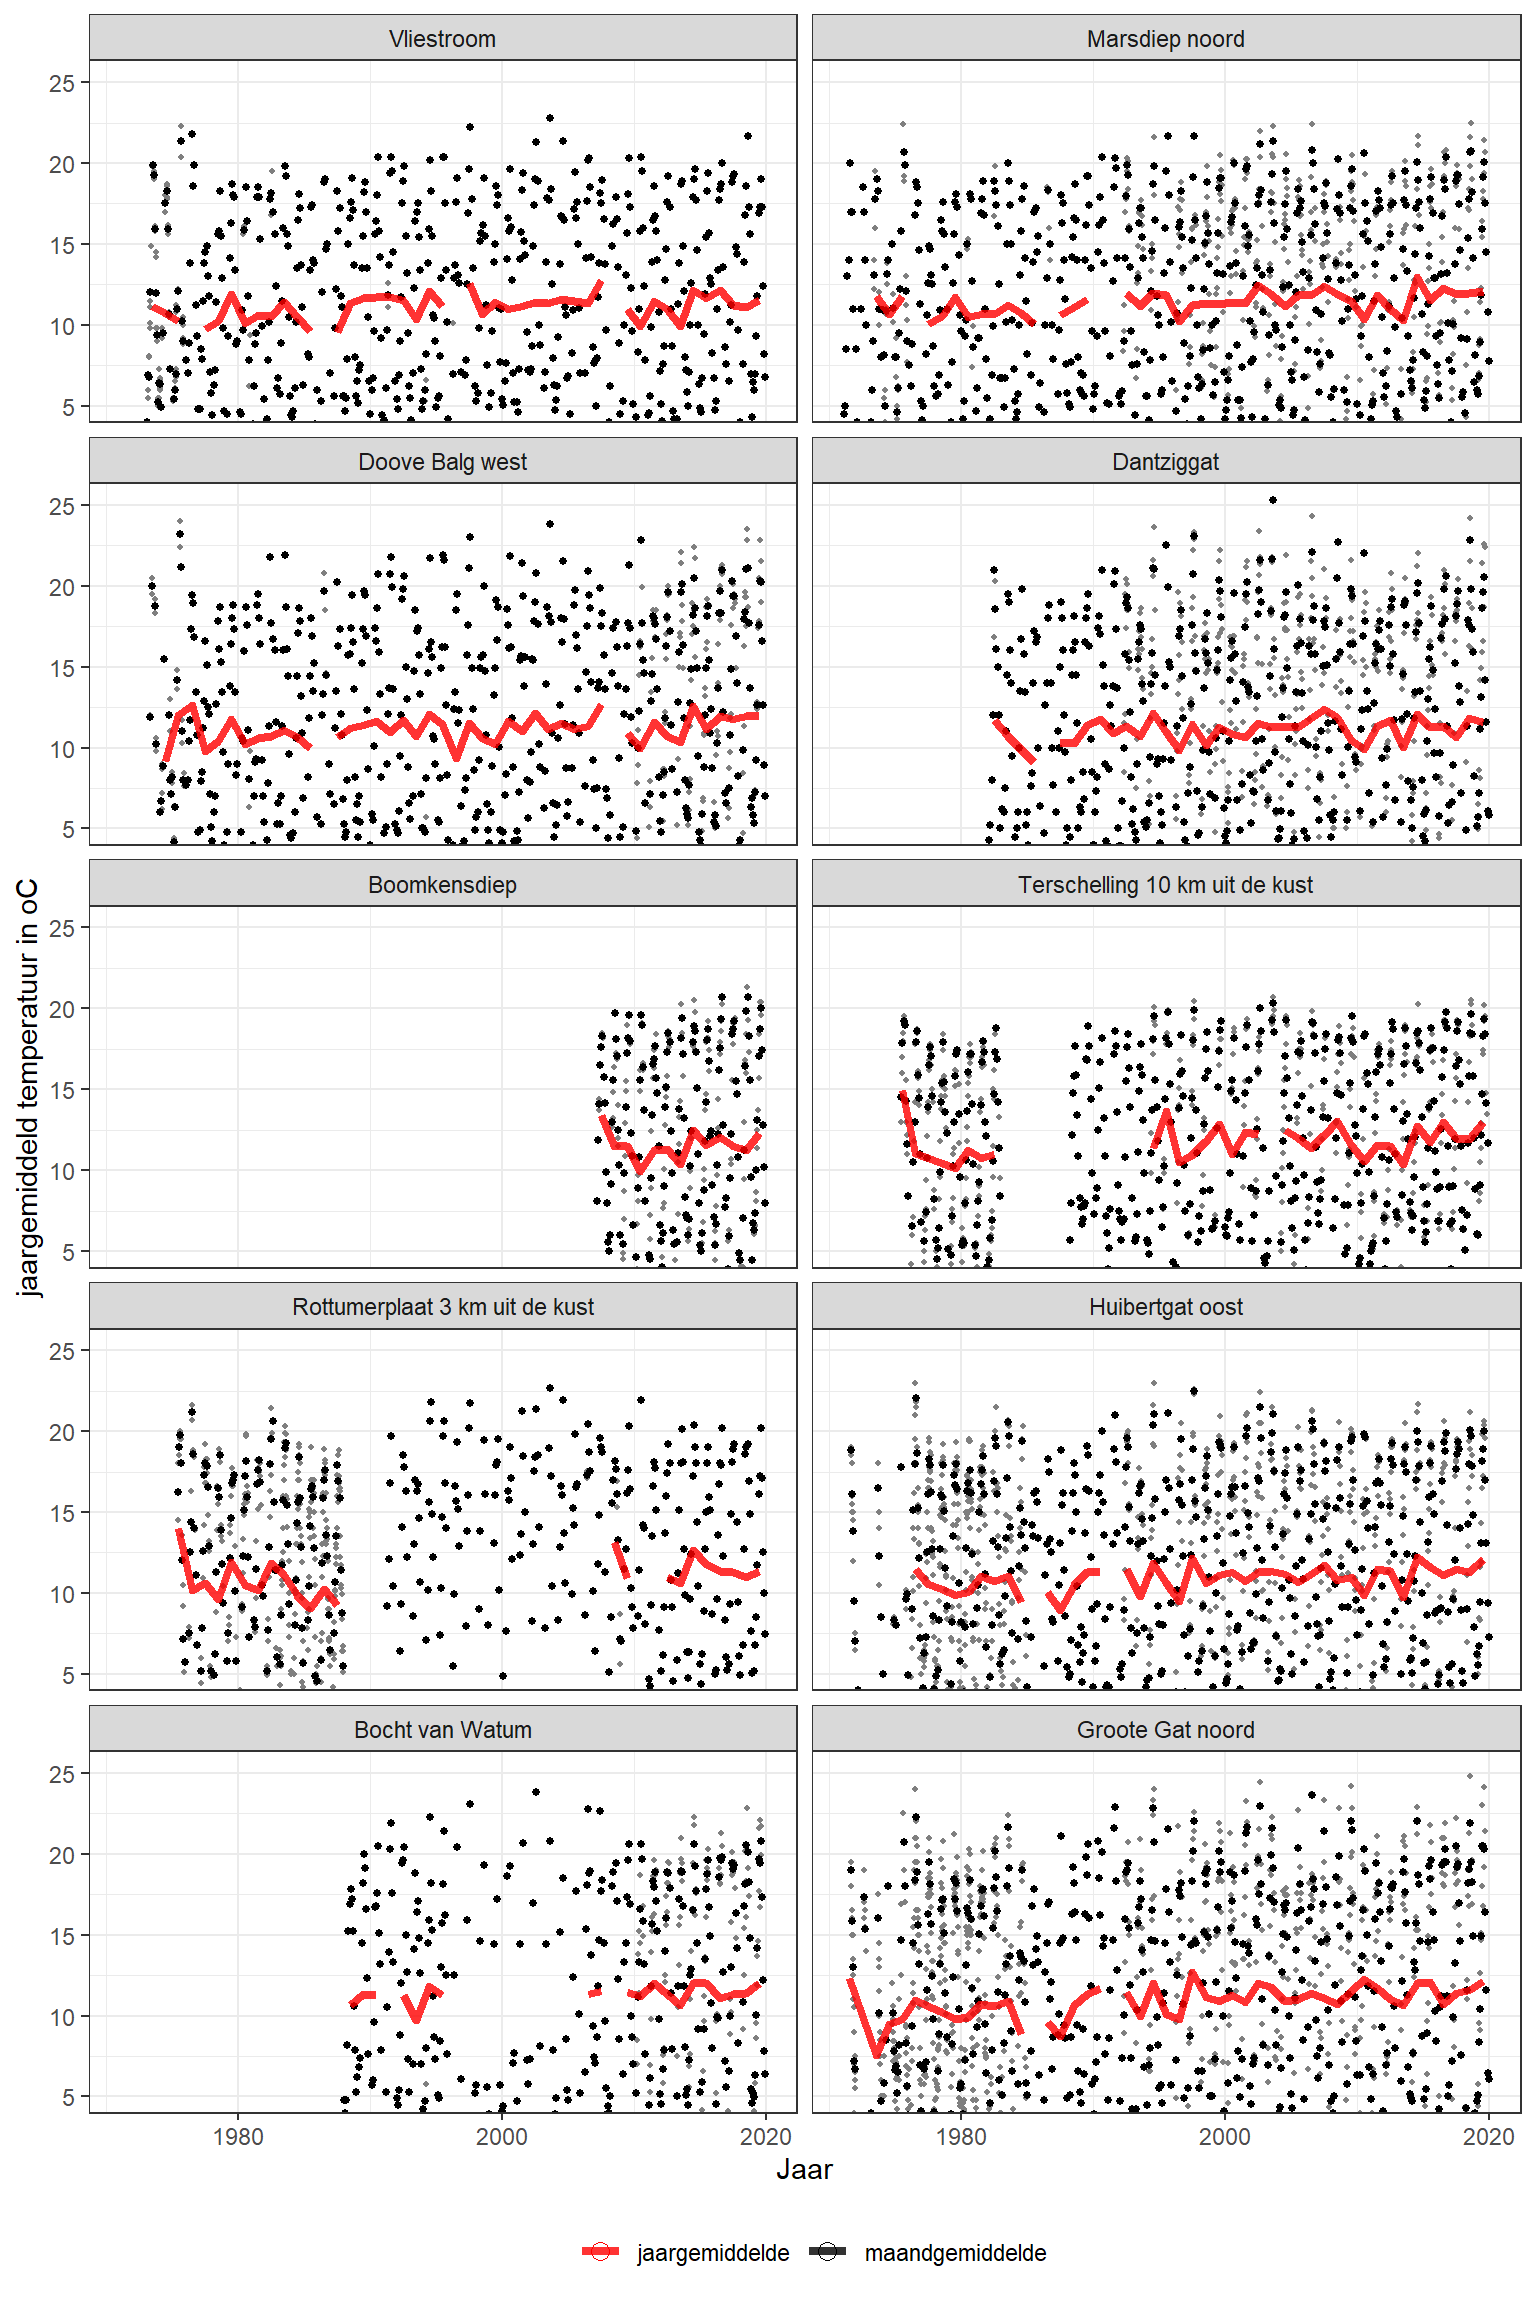 Jaargemiddelde watertemperatuur in de Waddenzee (rode lijn), maandgemiddelden (punten) en individuele metingen (kleinste punten). Jaargemiddelden zijn alleen berekend wanneer er voor minstens 11 maanden gegevens waren. 